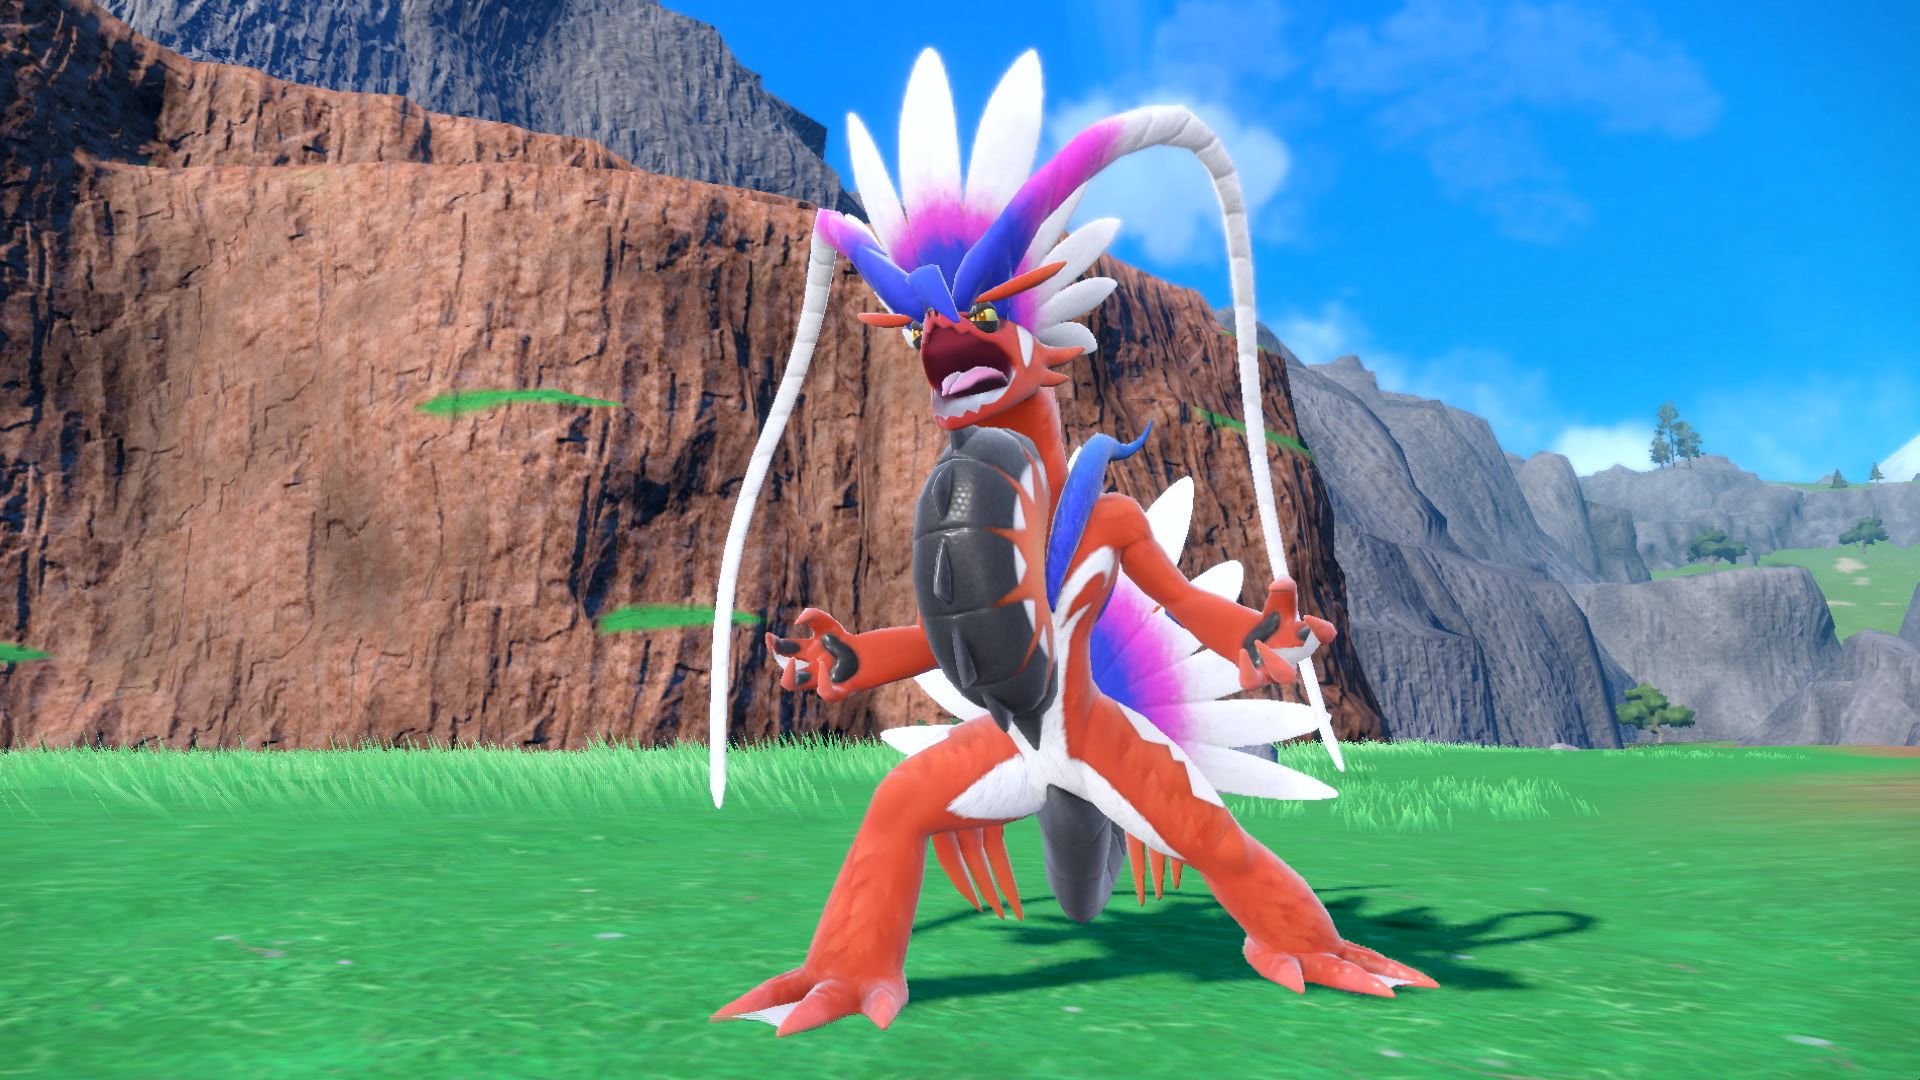 Pokémon Scarlet & Violet: Saiba mais sobre Koraidon e Miraidon, os  lendários da região de Paldea